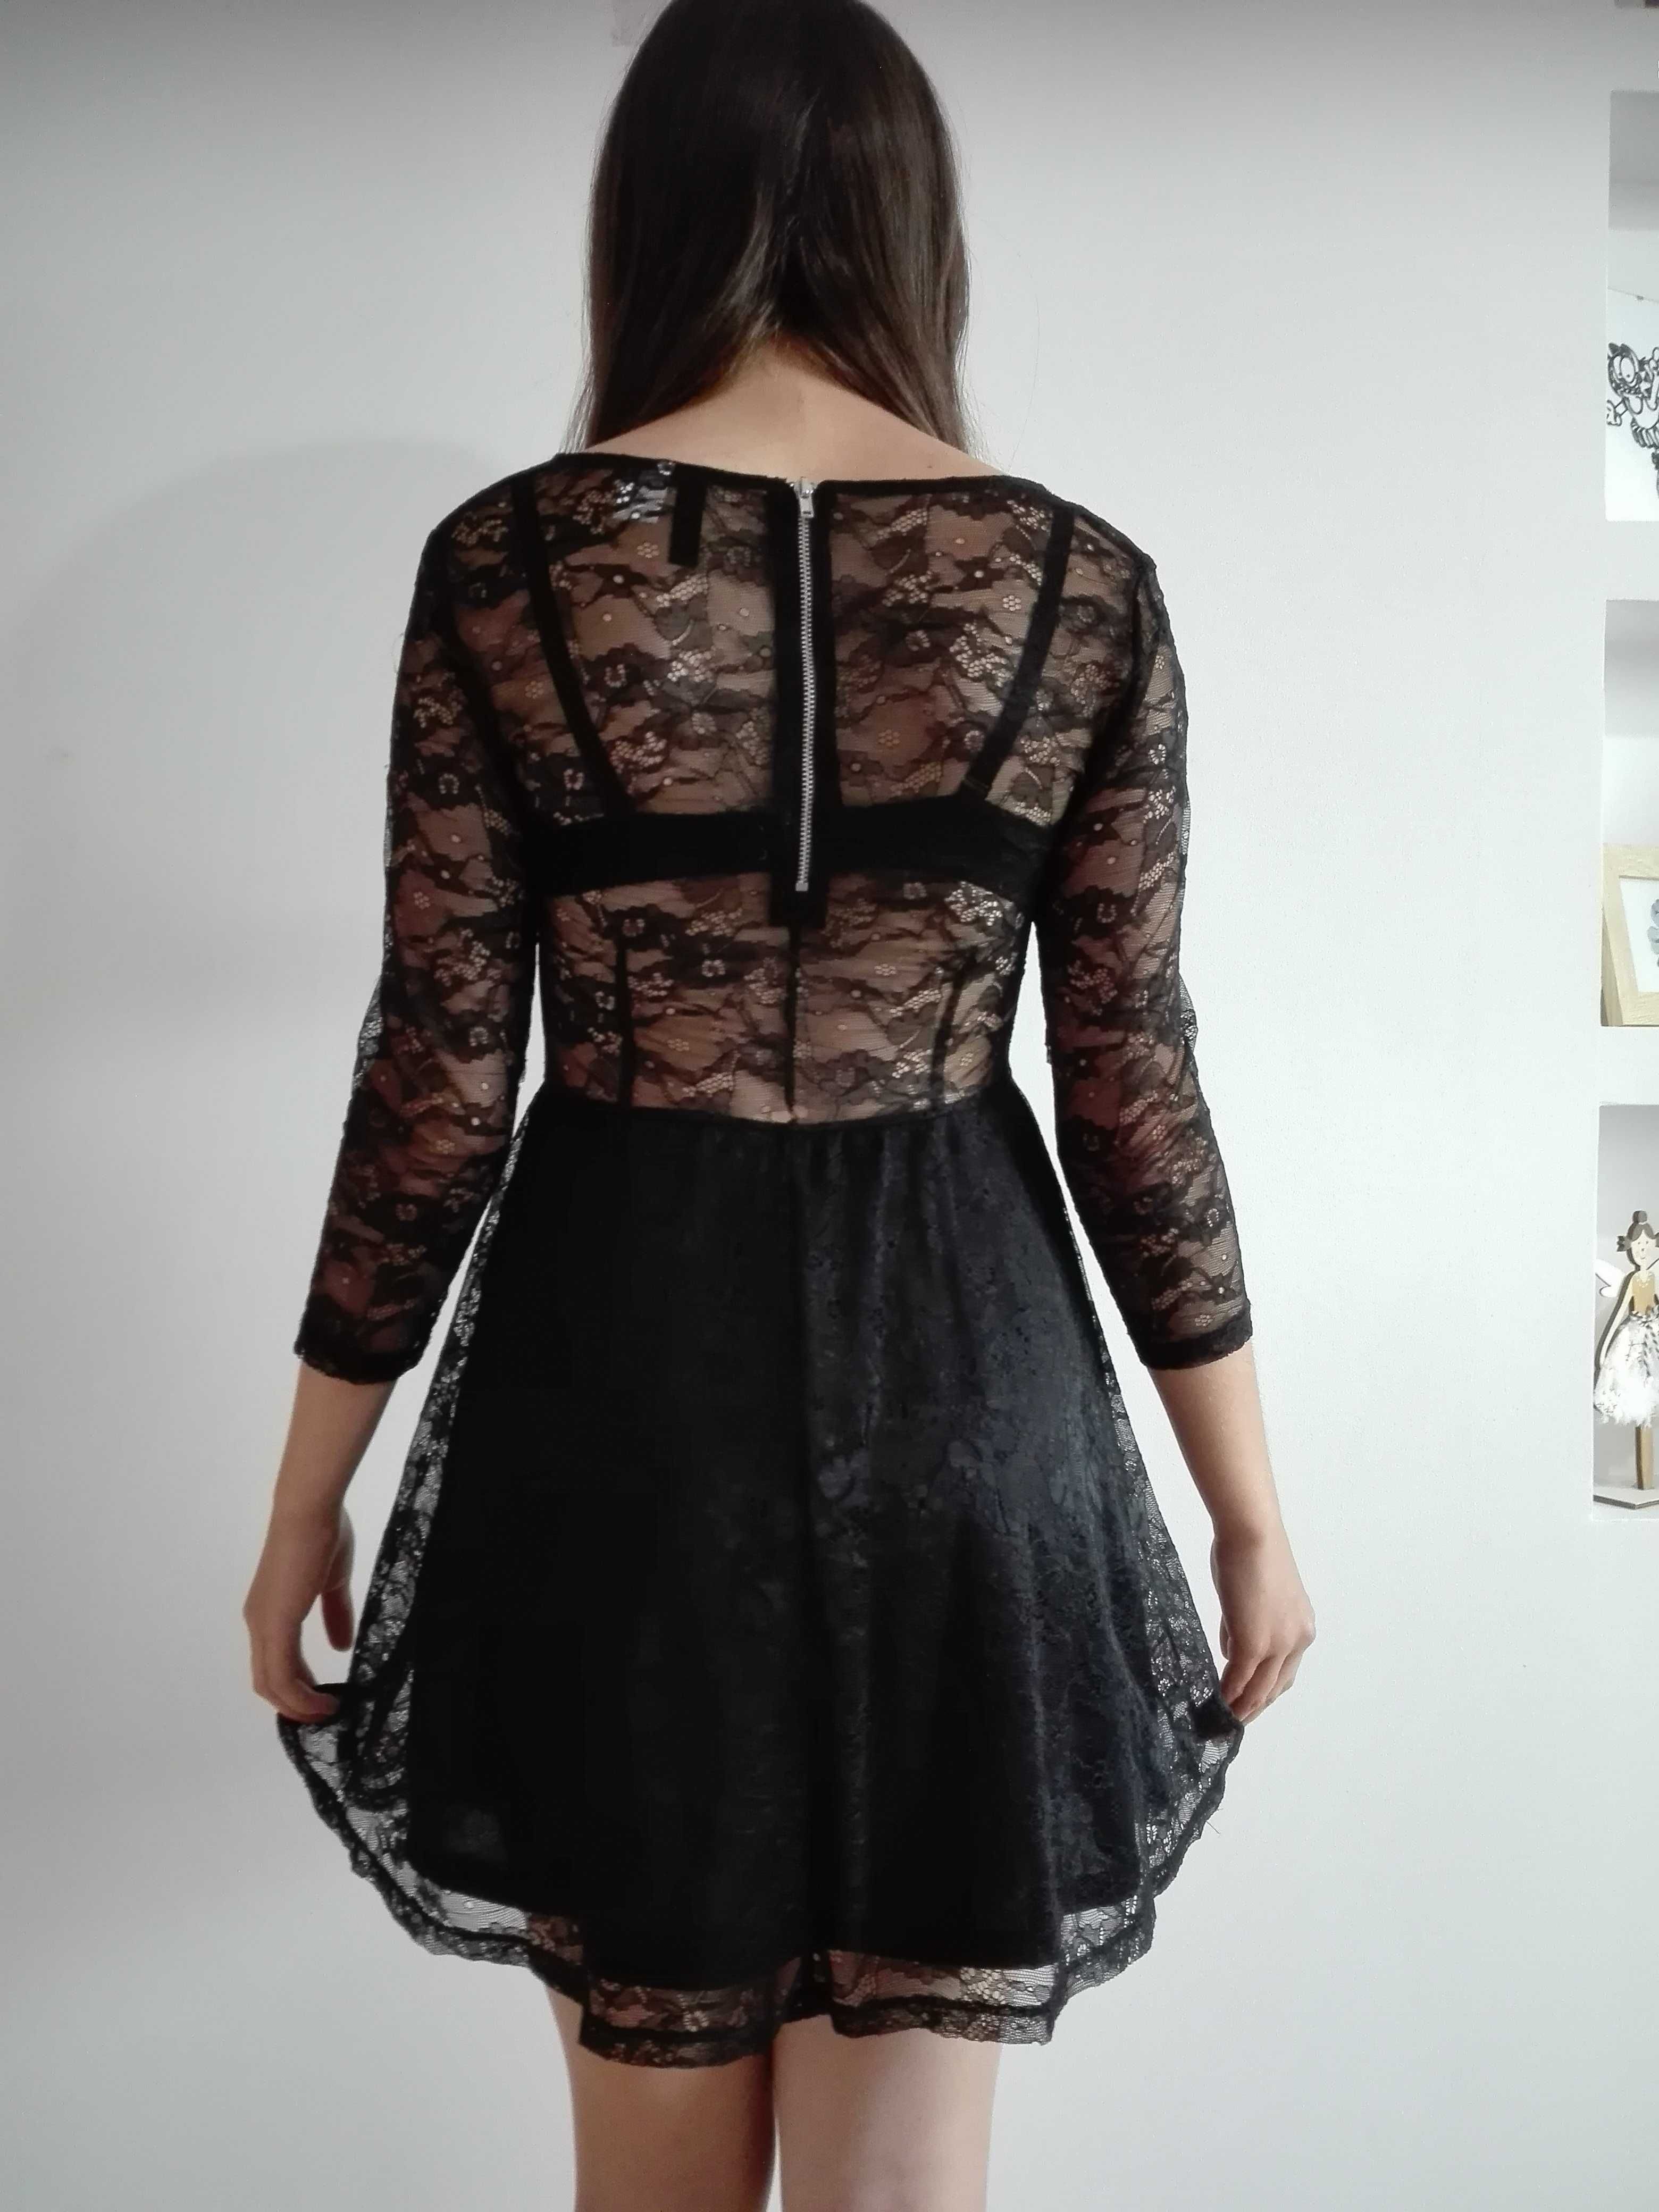 czarna sukienka z koronki, 38, M, koronkowa z H&M